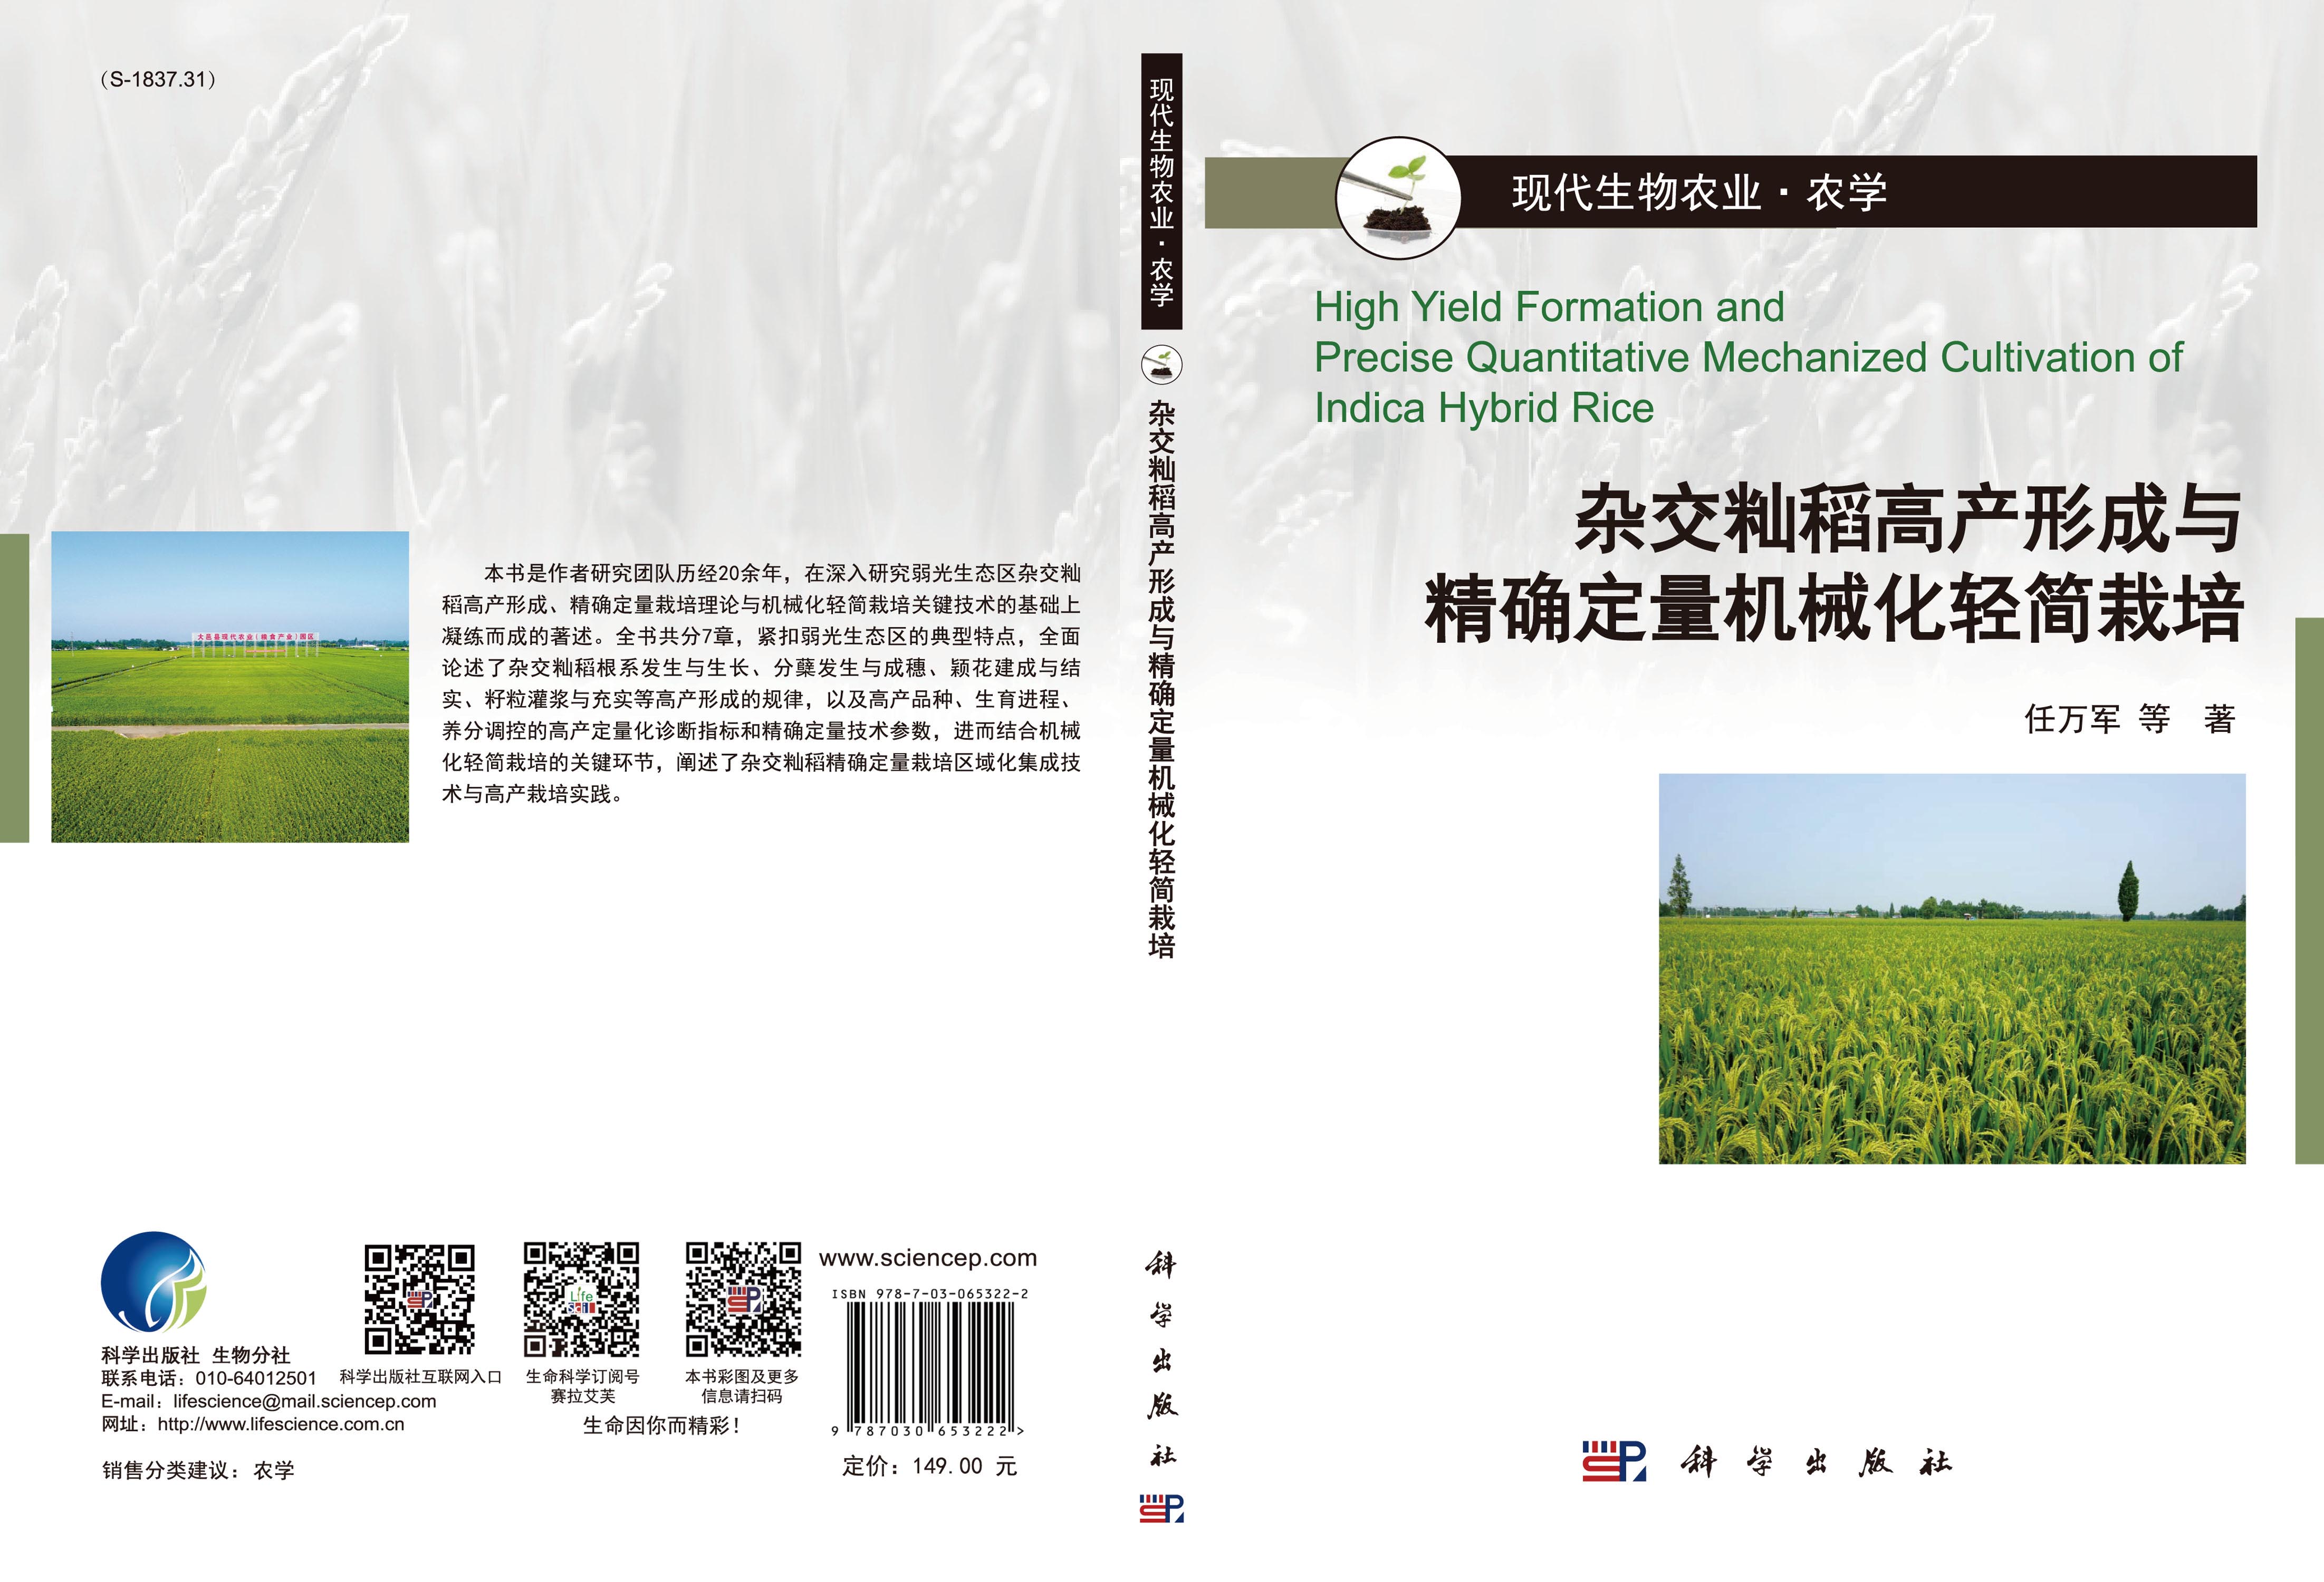 杂交籼稻高产形成与精确定量机械化轻简栽培